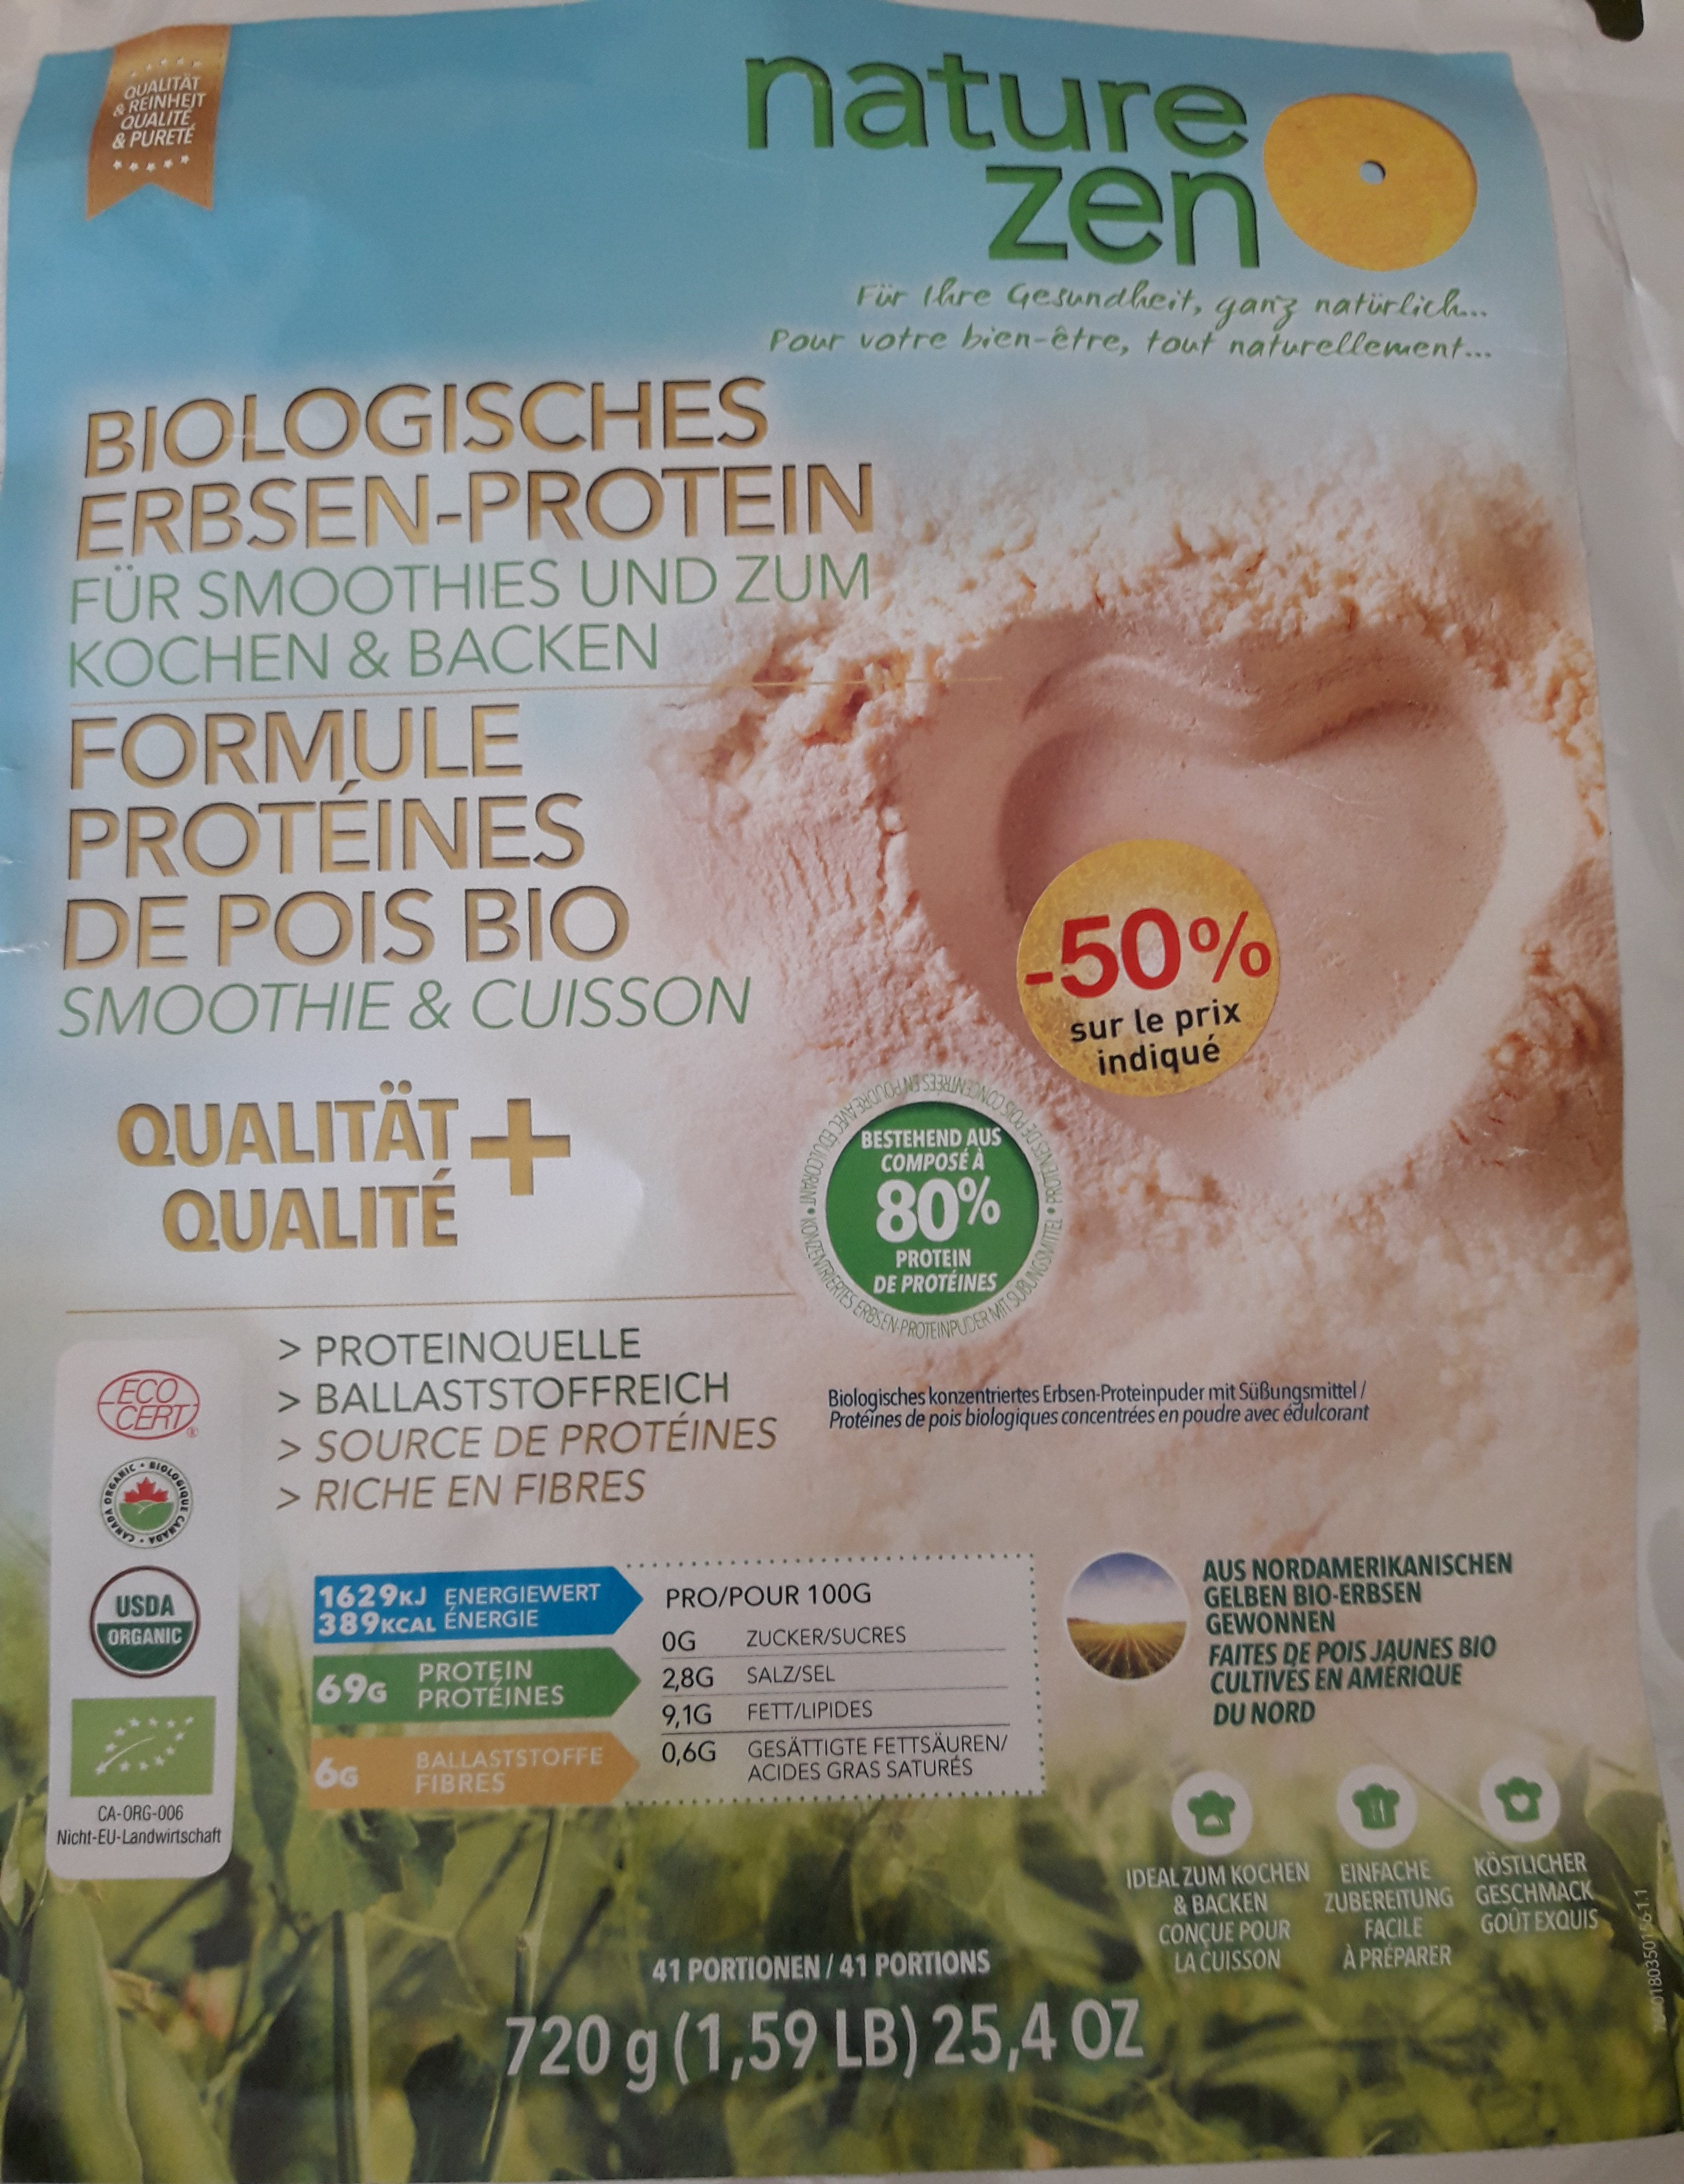 formule protéines de pois bio - Produkt - fr